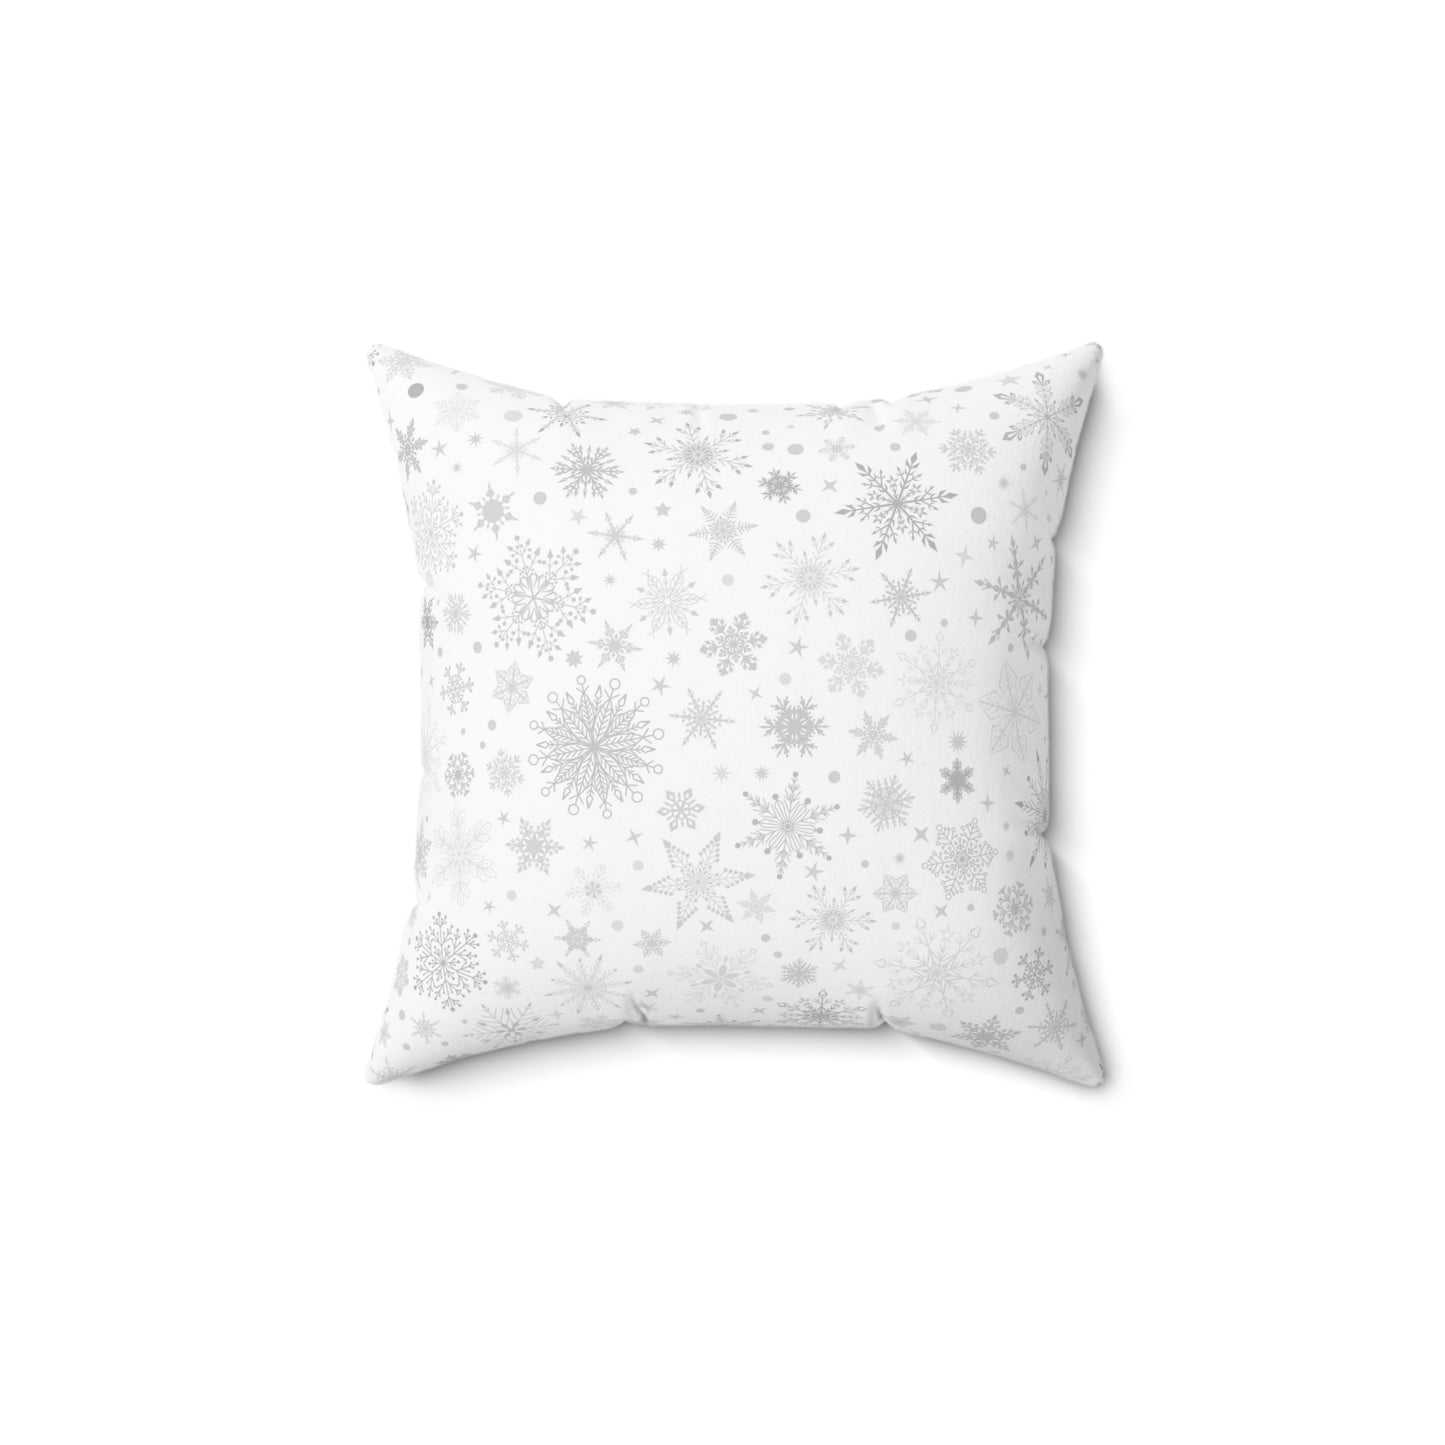 Winter White Snowflake Pillow